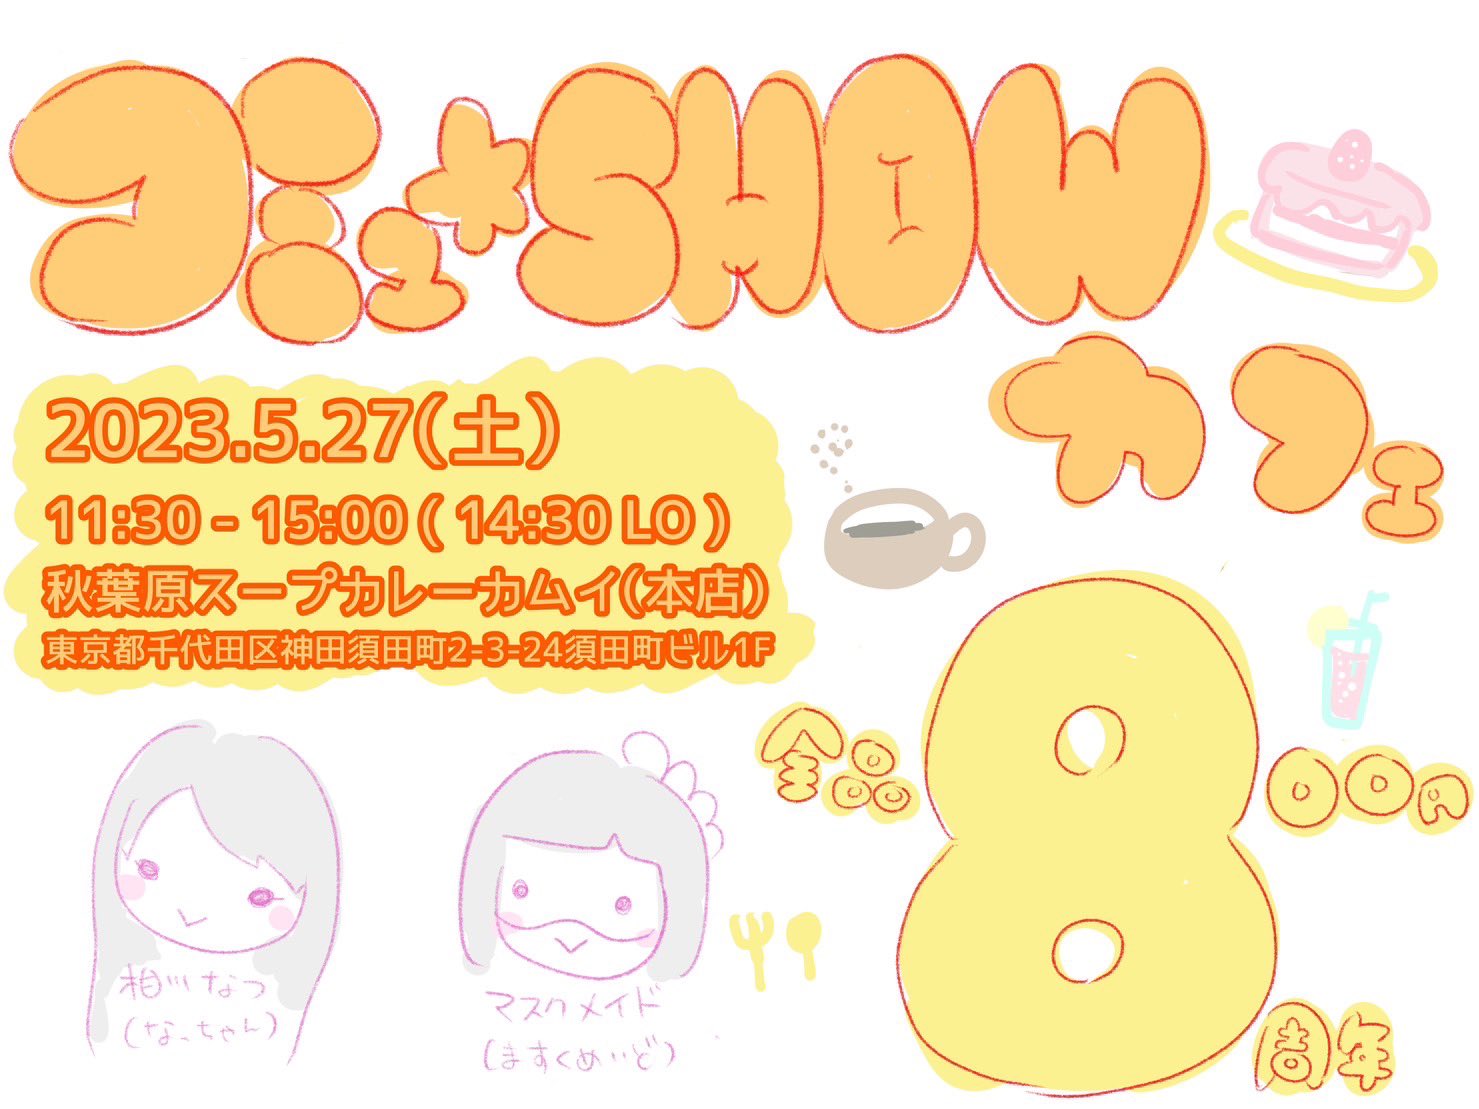 5月27日(土)「コミュ☆SHOW カフェ」を開催します!!!